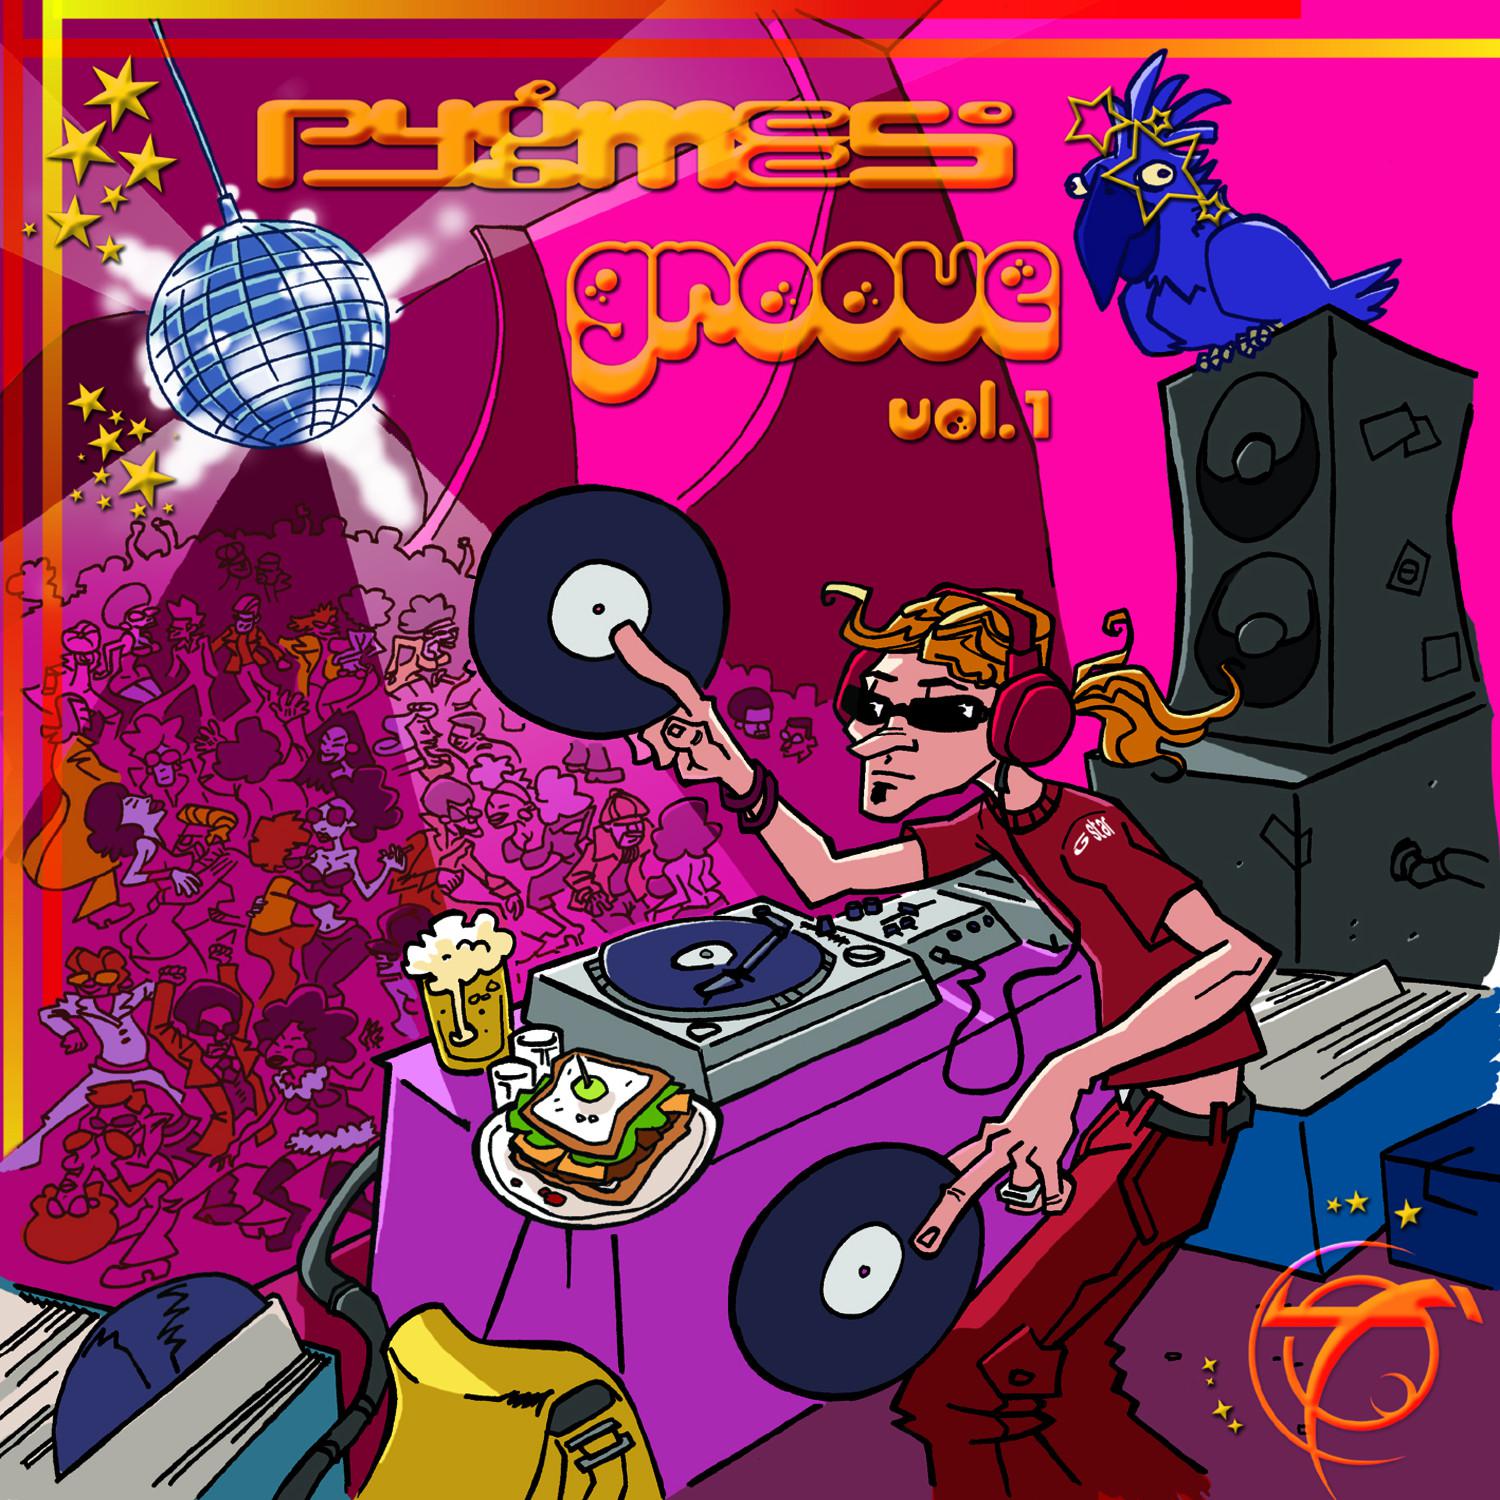 Pygmees Grooves Vol 1